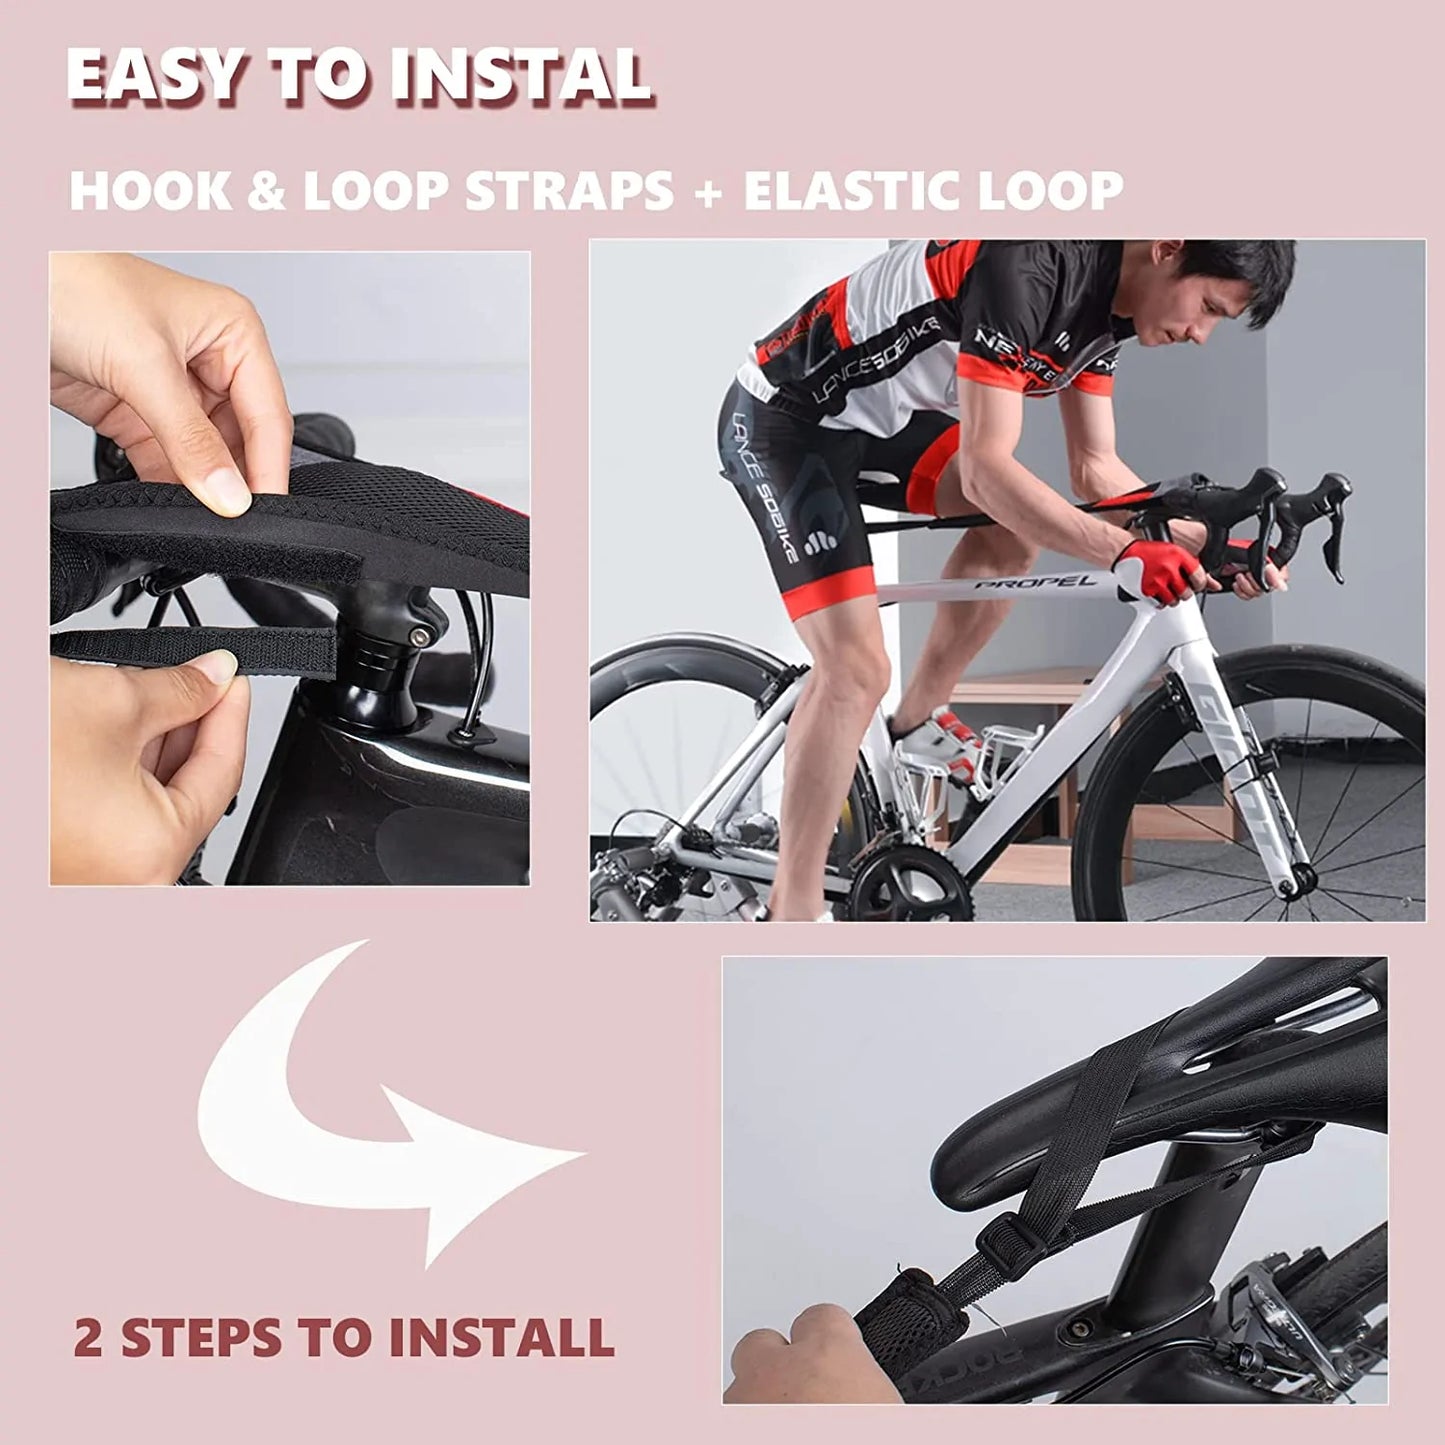 ROCKBROS accesorios para el entrenador de bicicleta Absorbente Transpirable Secado rápido